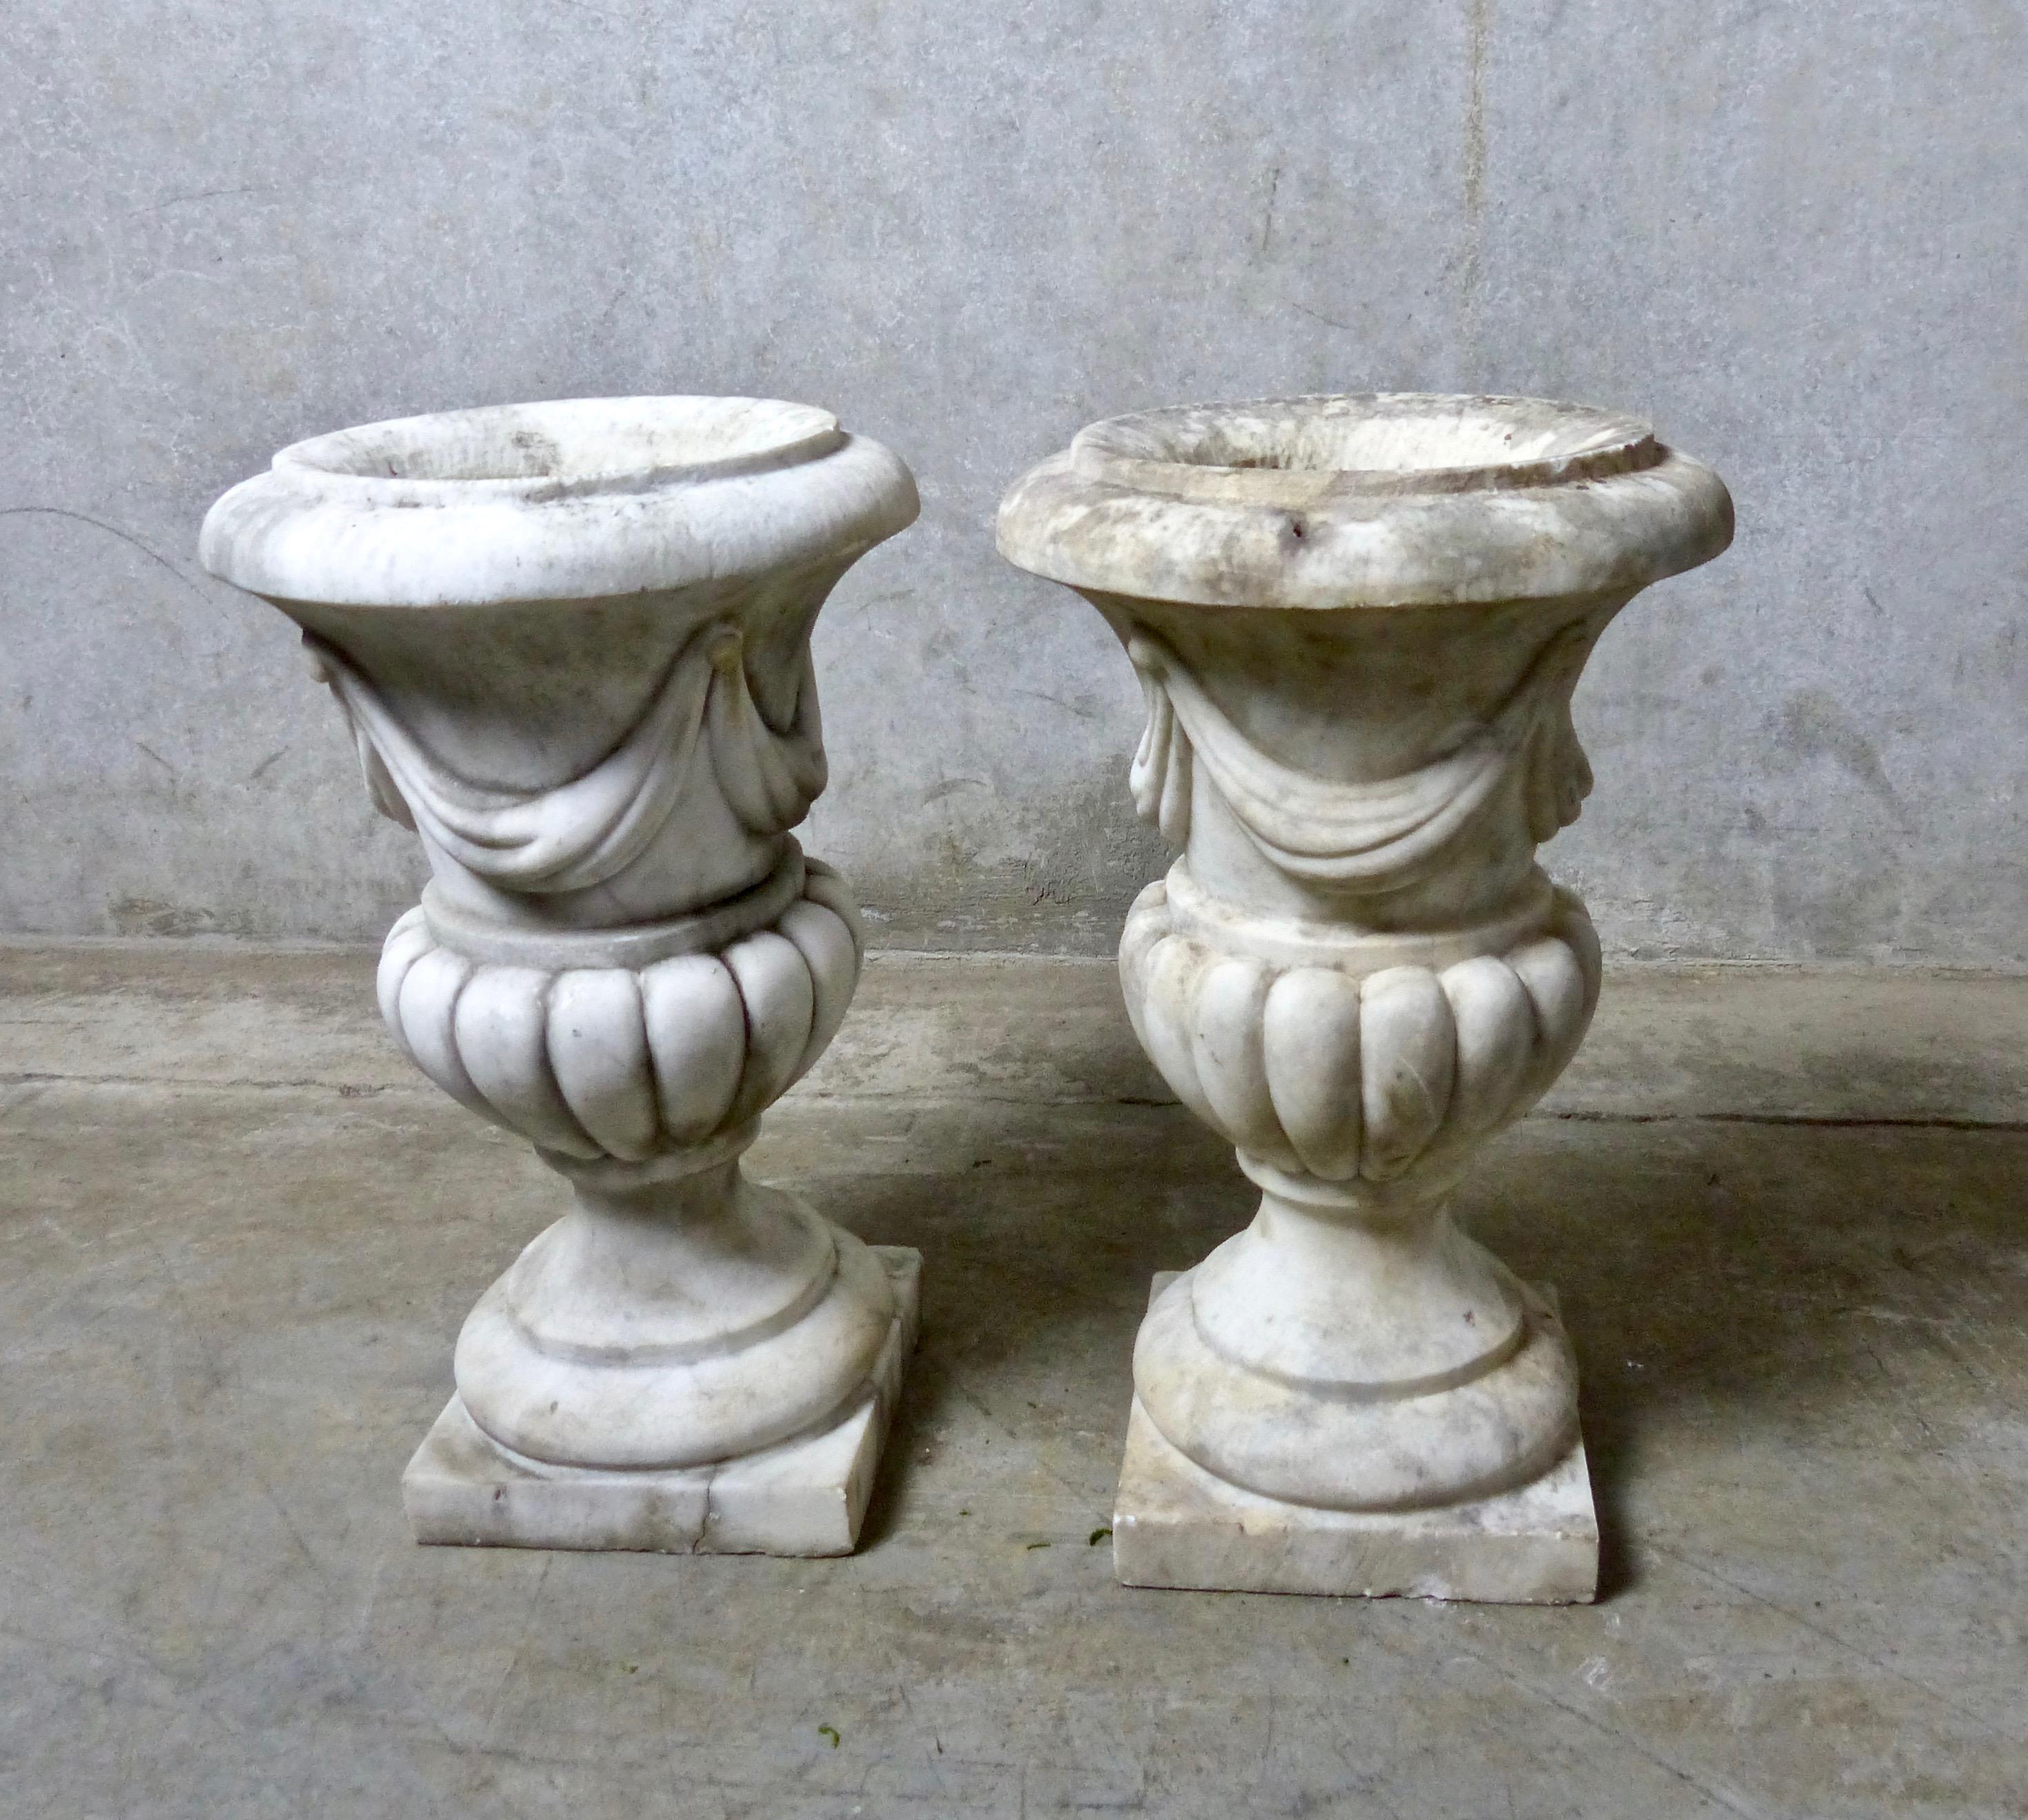 marble garden urns